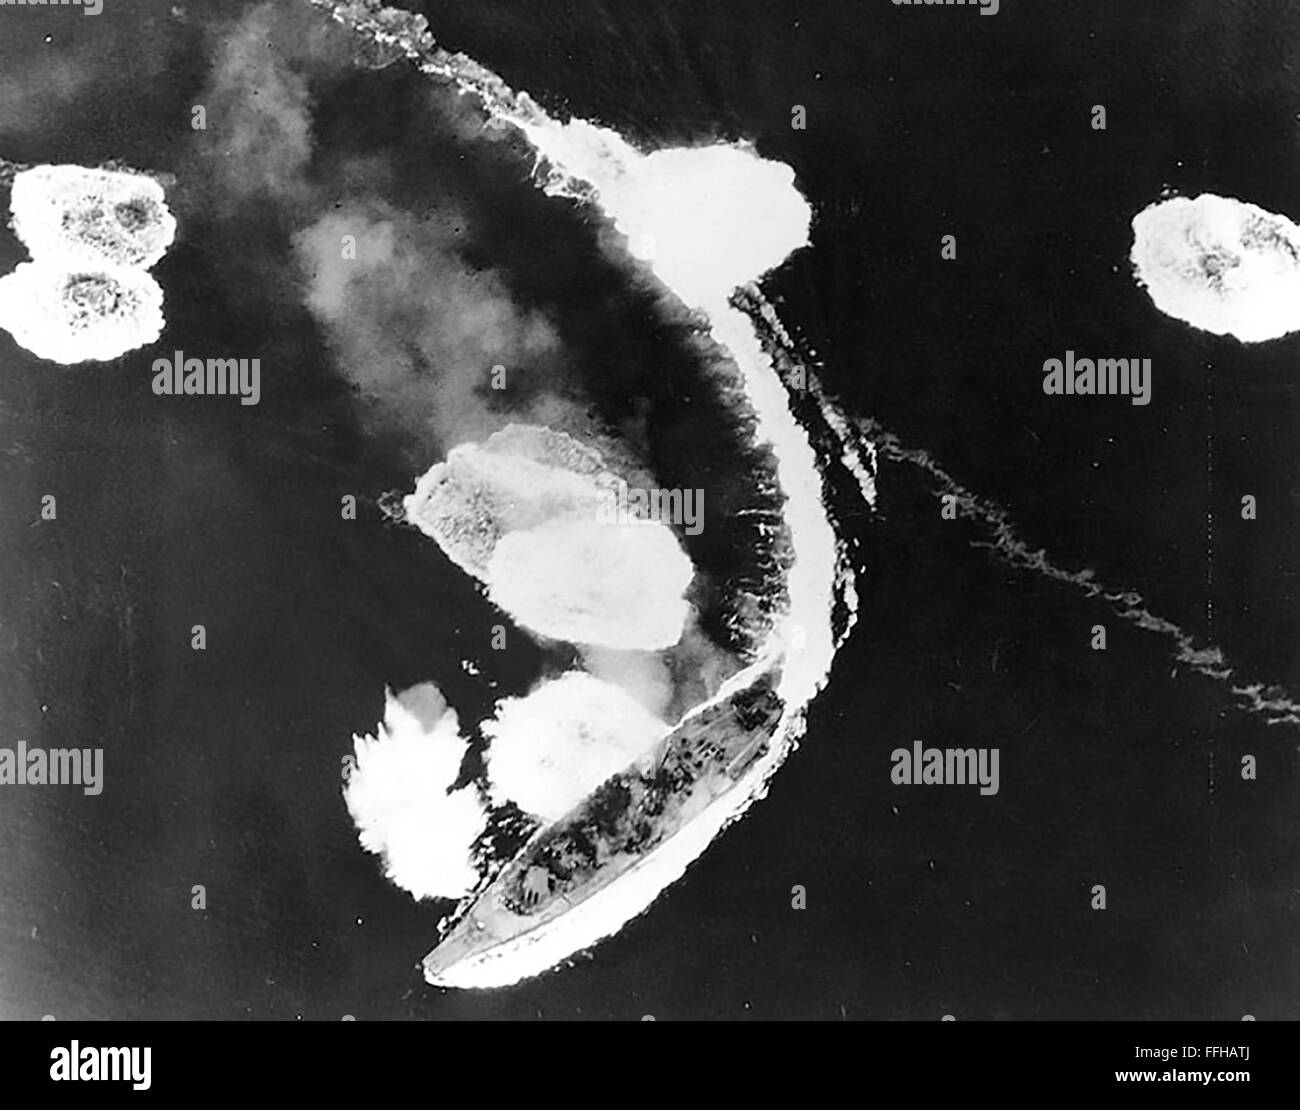 Japanisches Schlachtschiff YAMATO unter Beschuss durch die US Navy Task Force in der Seto-Inlandsee aus japanischen Hafen von Kure in Süd-west-Japan am 19. März 1945. Das Schiff wurde nur leicht beschädigt, aber schließlich versenkt am 7. April. Stockfoto